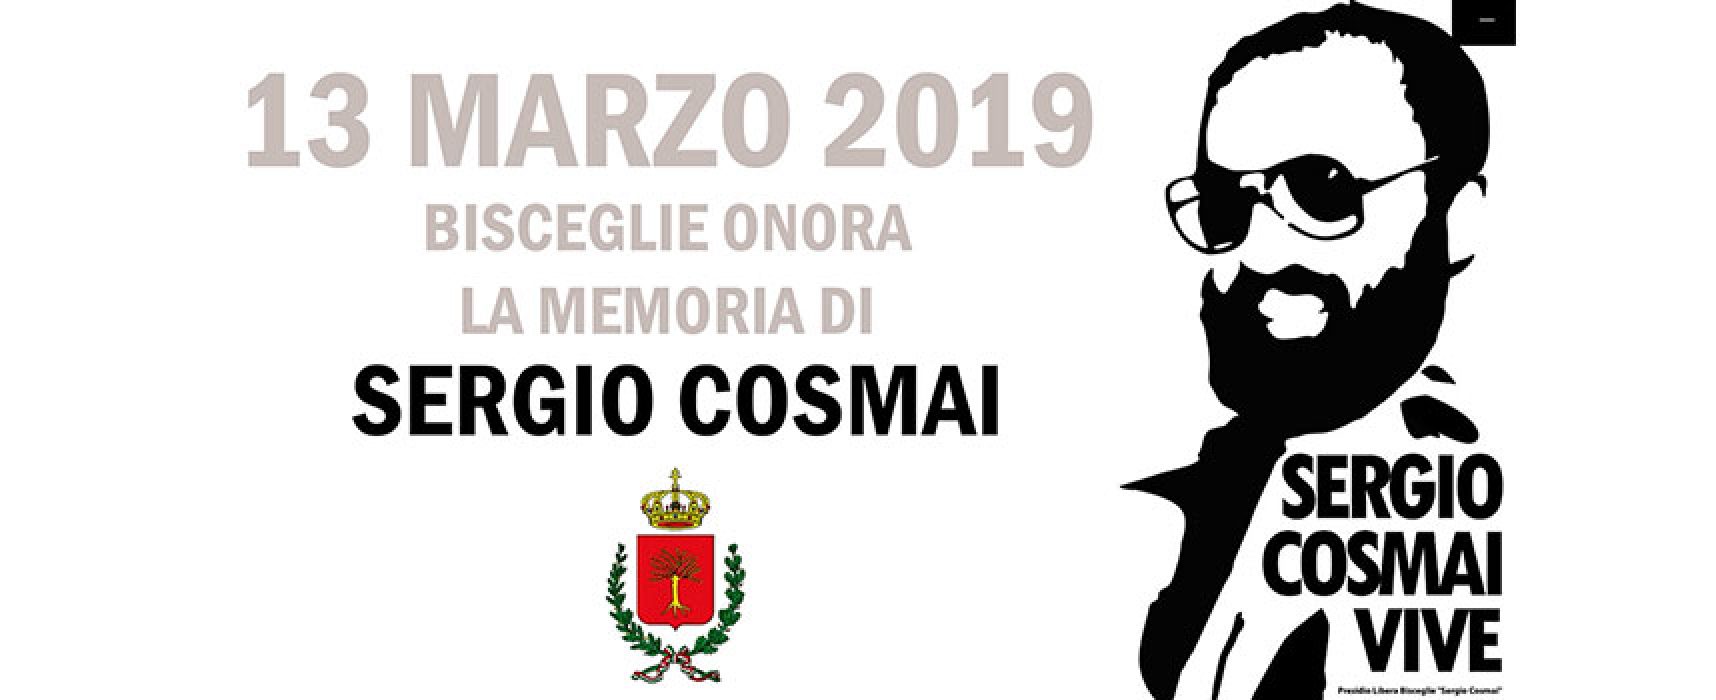 Sindaco, assessori e consiglieri in un video per ricordare Sergio Cosmai nell’anniversario della morte / VIDEO